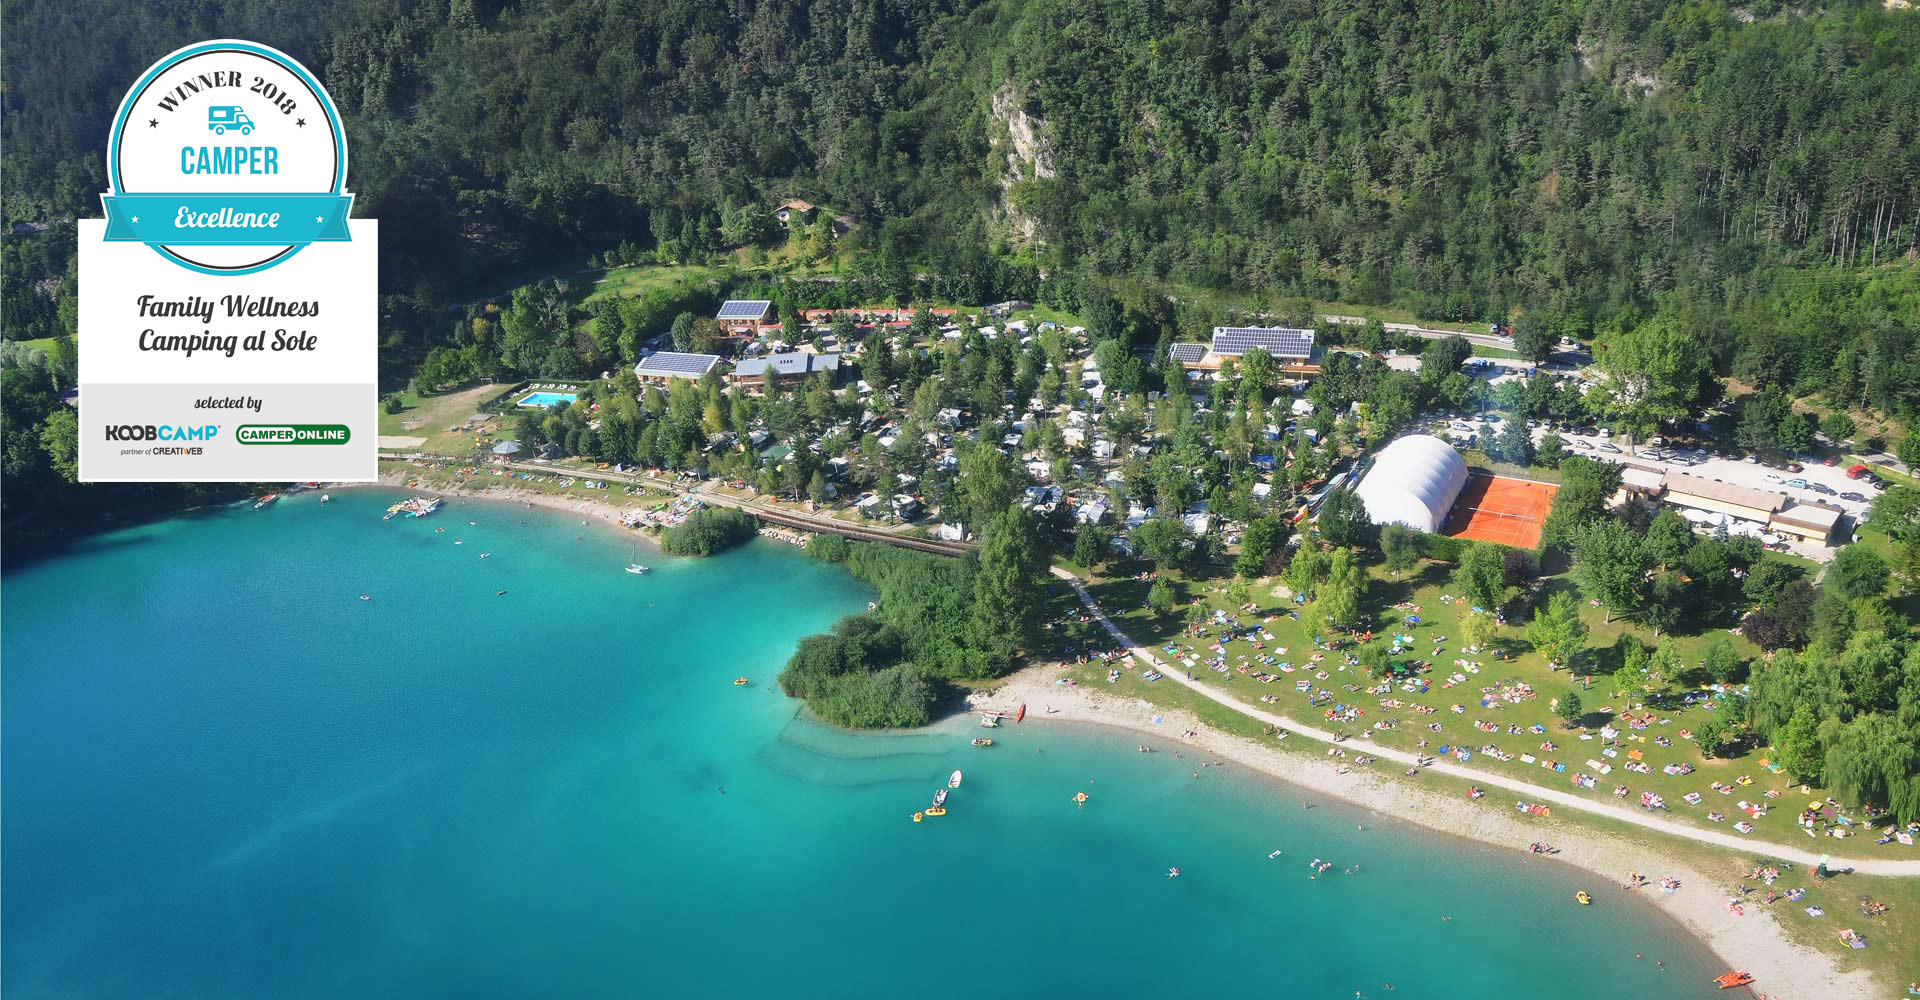 I 10 migliori Campeggi per Camper del 2018: vince il Family Wellness Camping al Sole di Ledro, in Trentino-Alto Adige